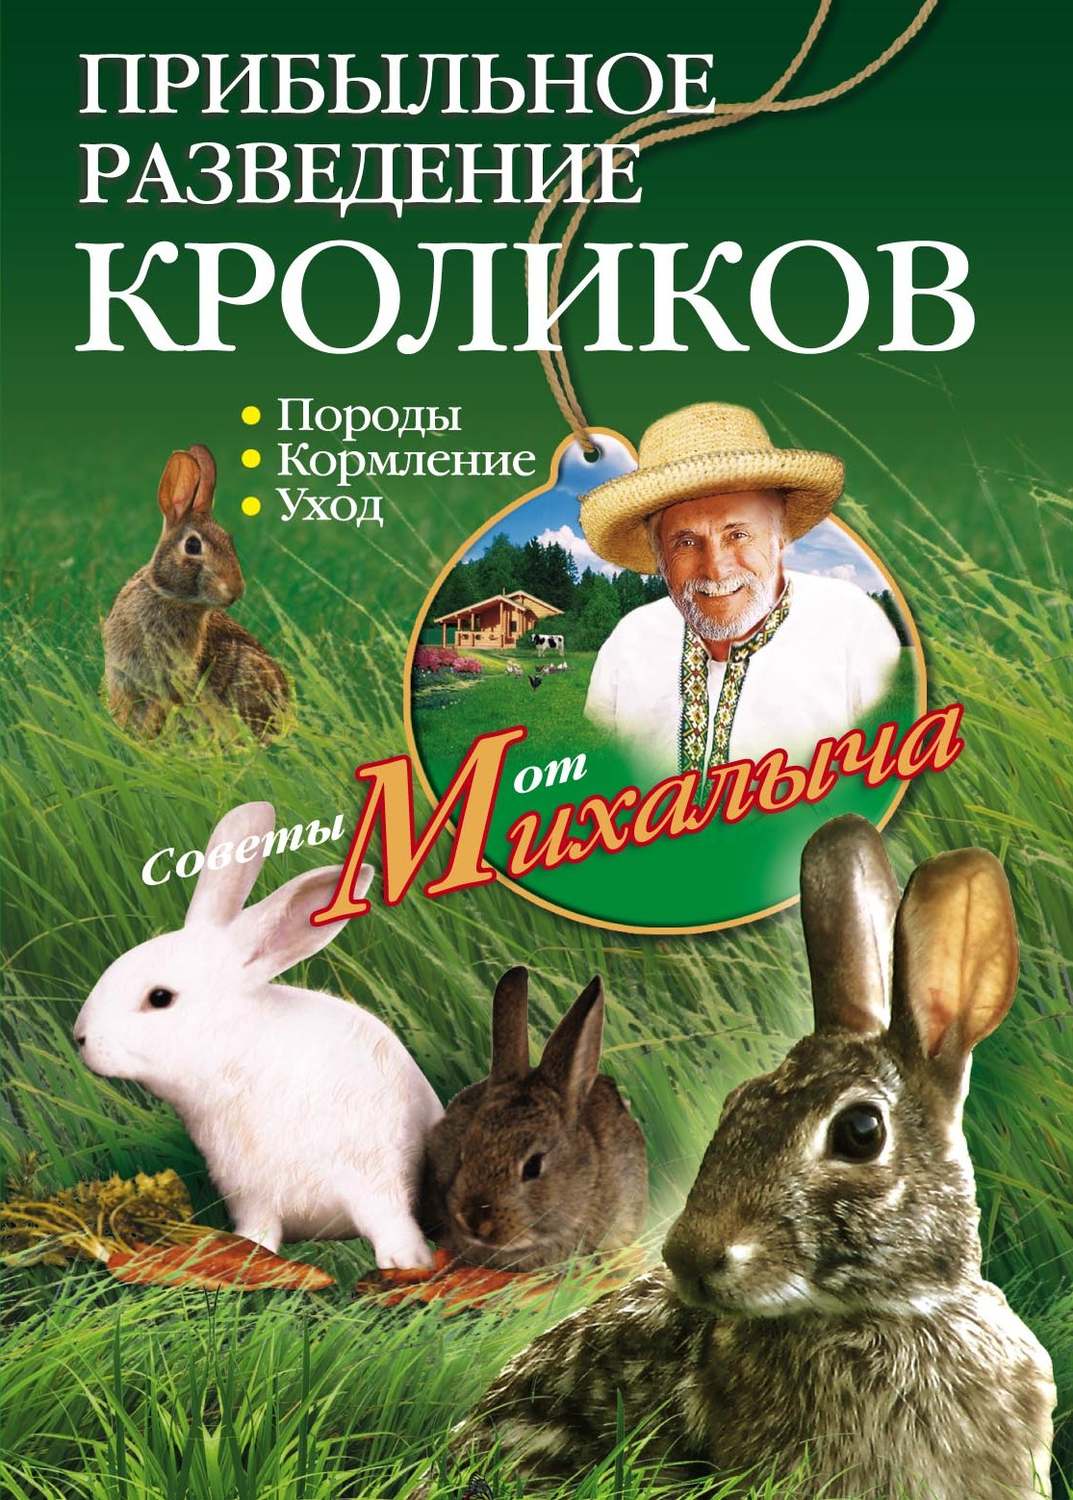 Книга о кролиководстве скачать